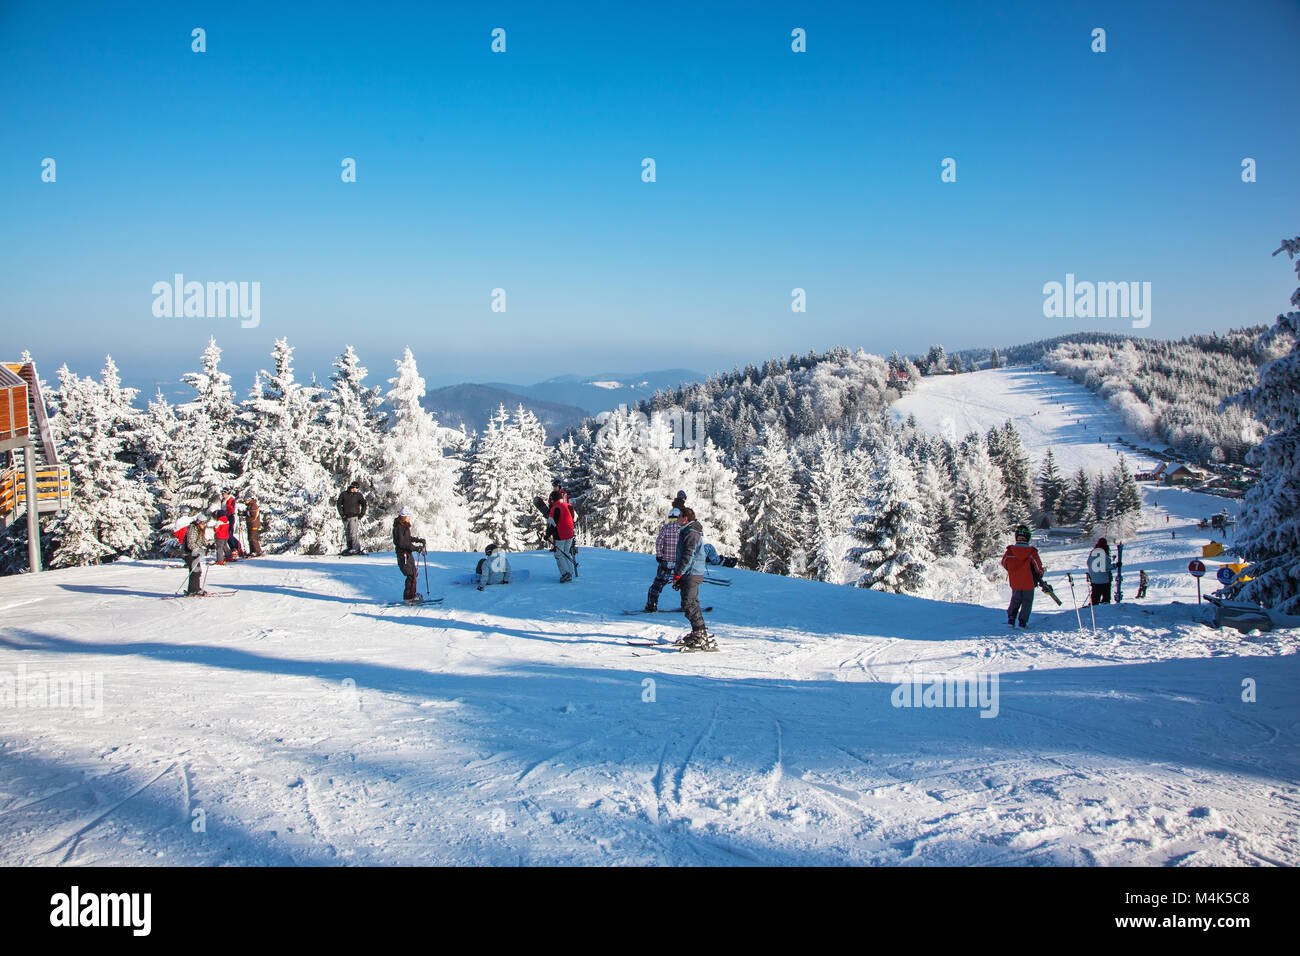 Les skieurs en vestes lumineuses se préparent au ski Banque D'Images